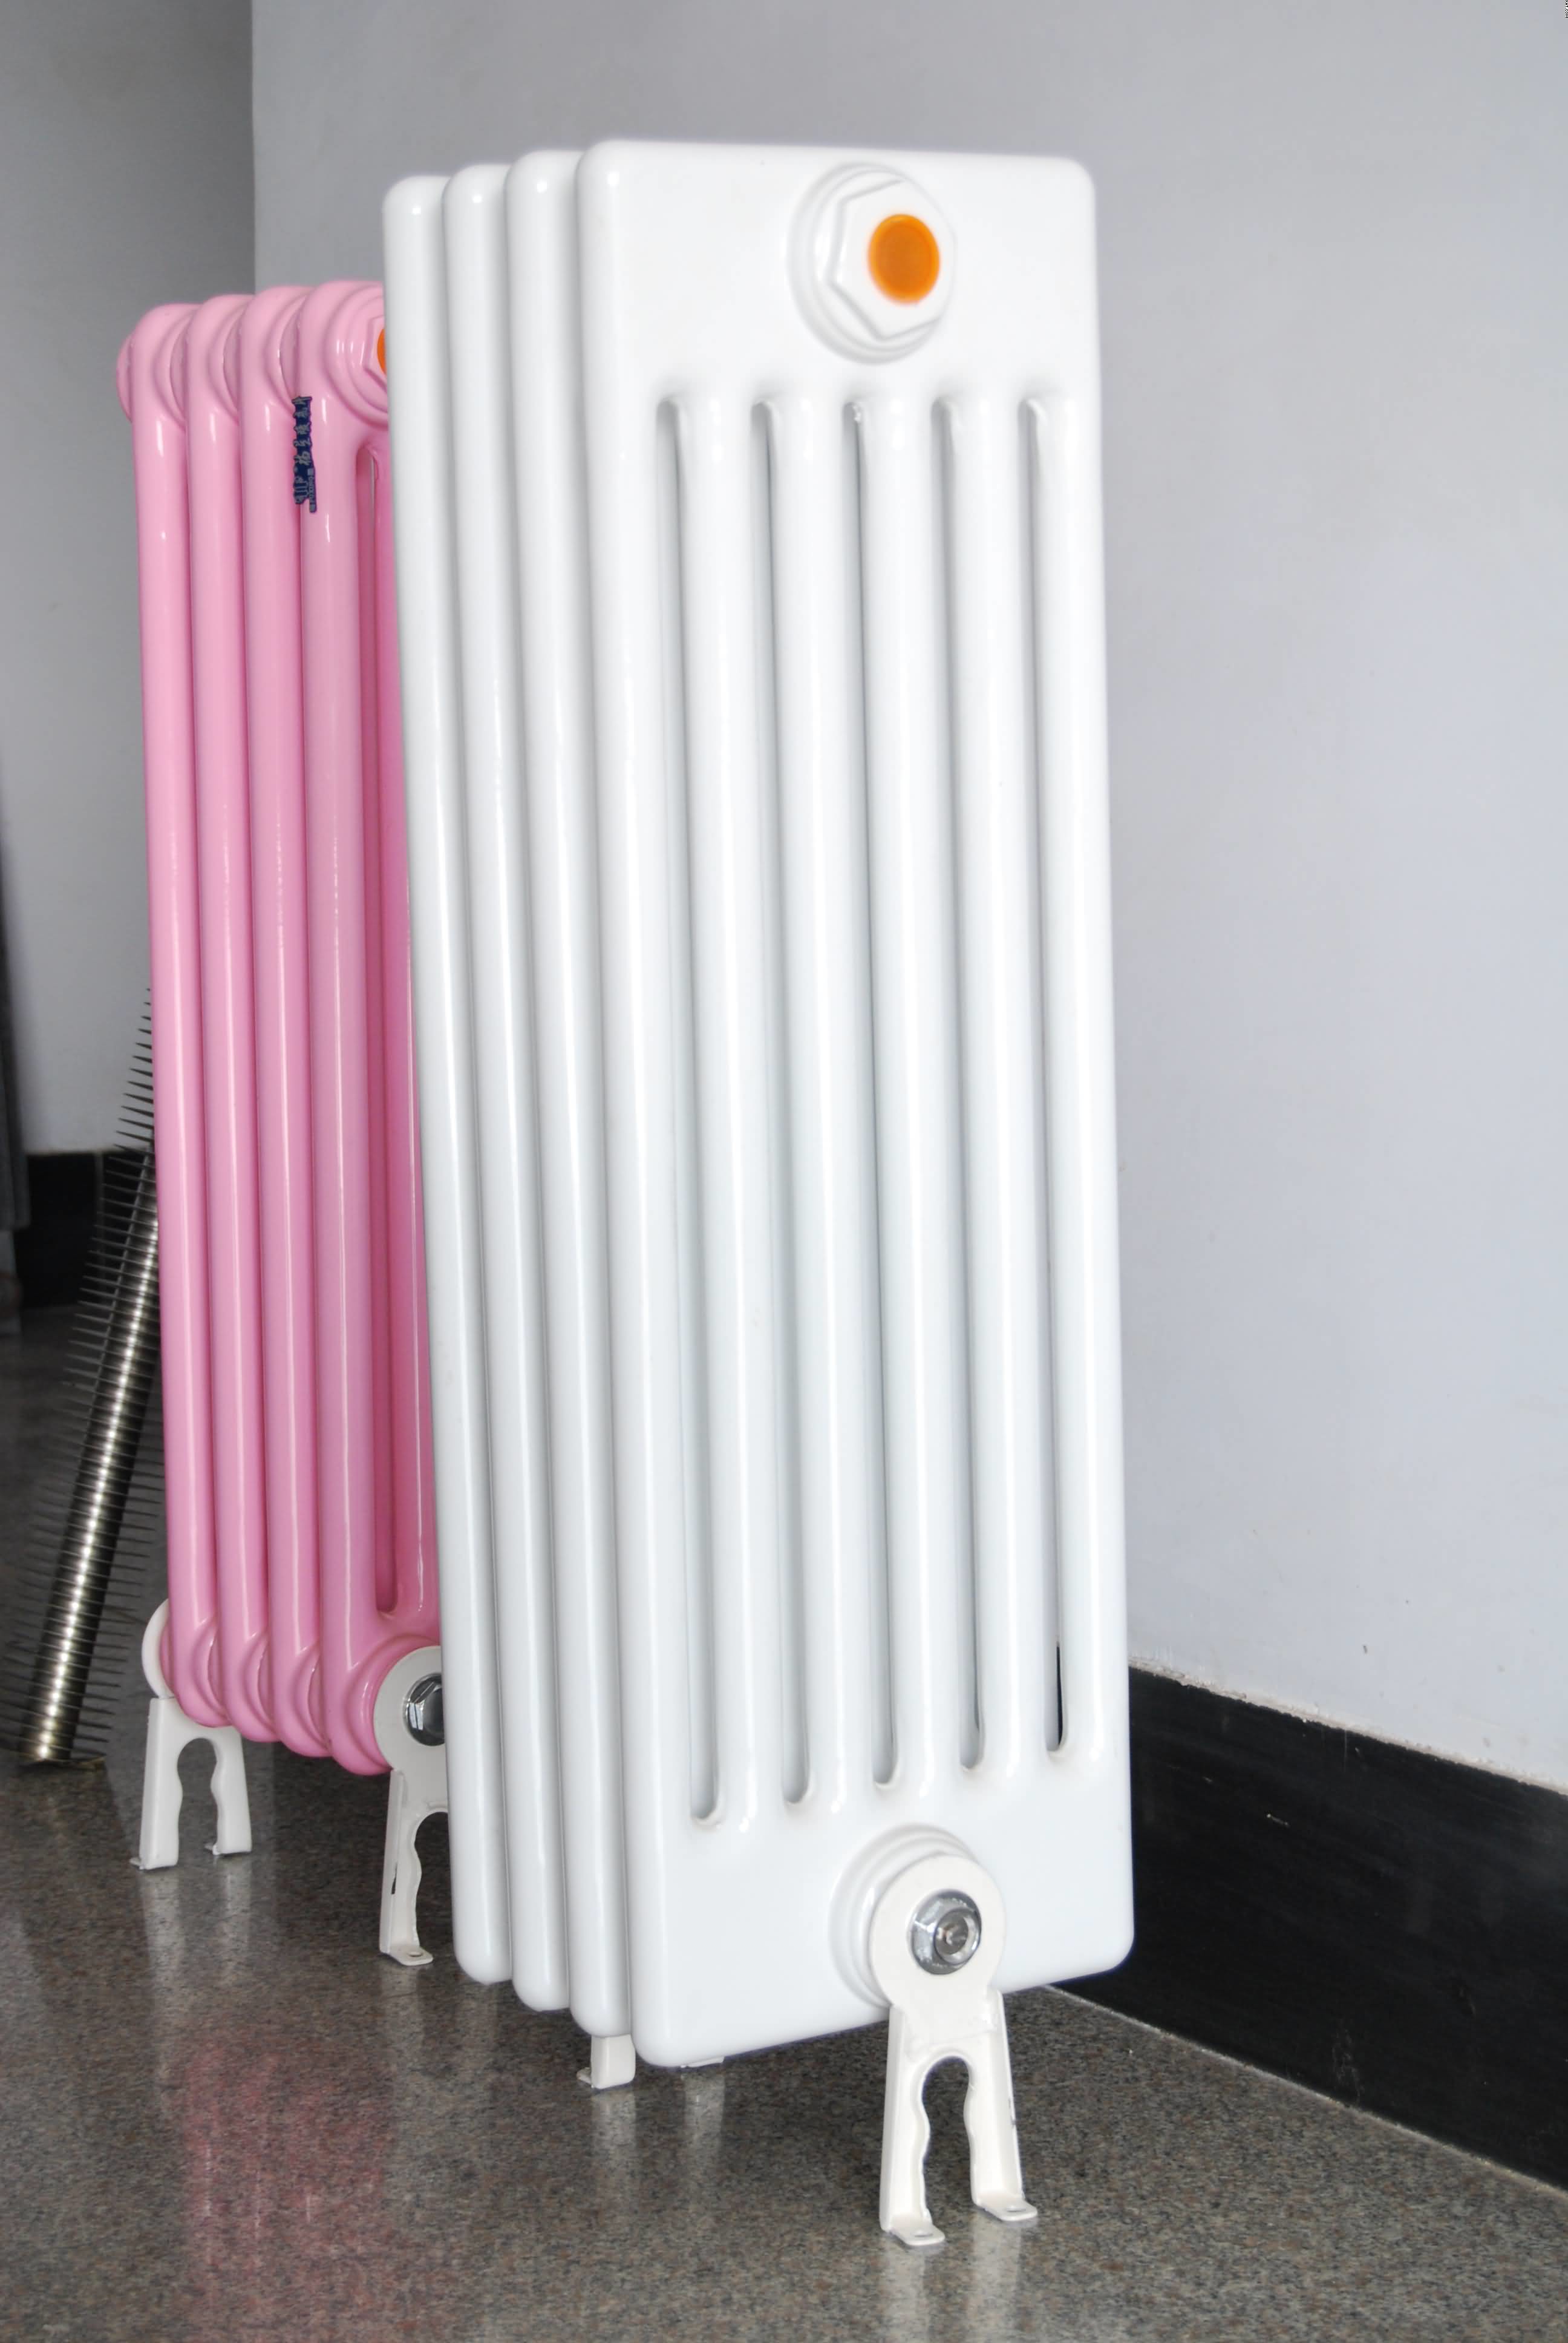 铜铝复合暖气片是现代家庭常用的一种新型散热器